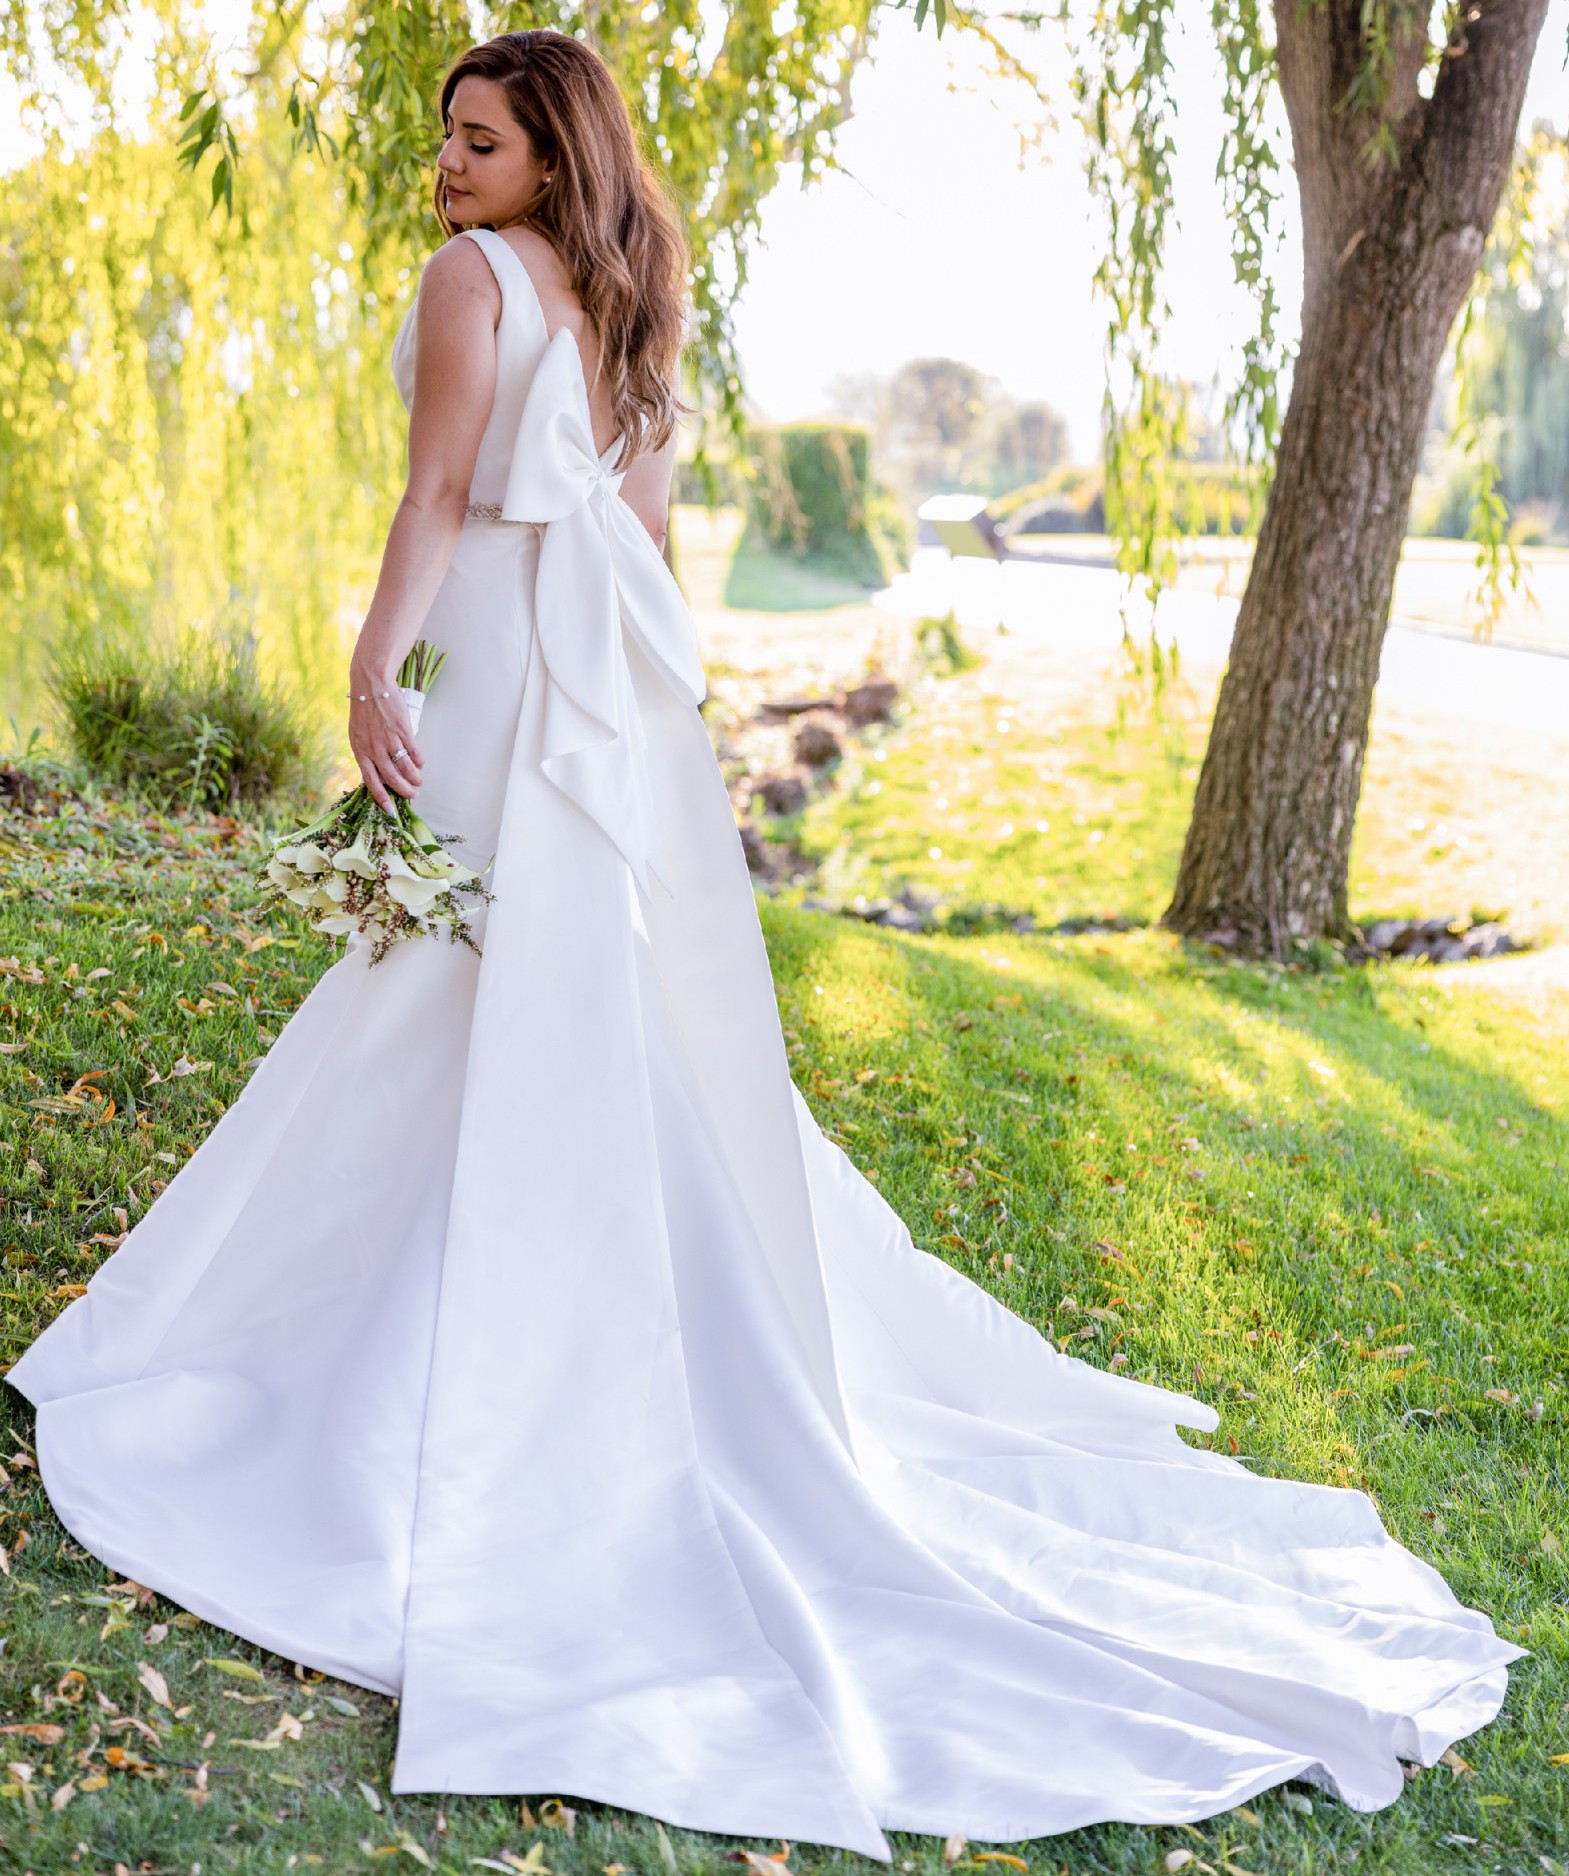 Exclusive Atelier Wedding Dress Save 55% - Stillwhite